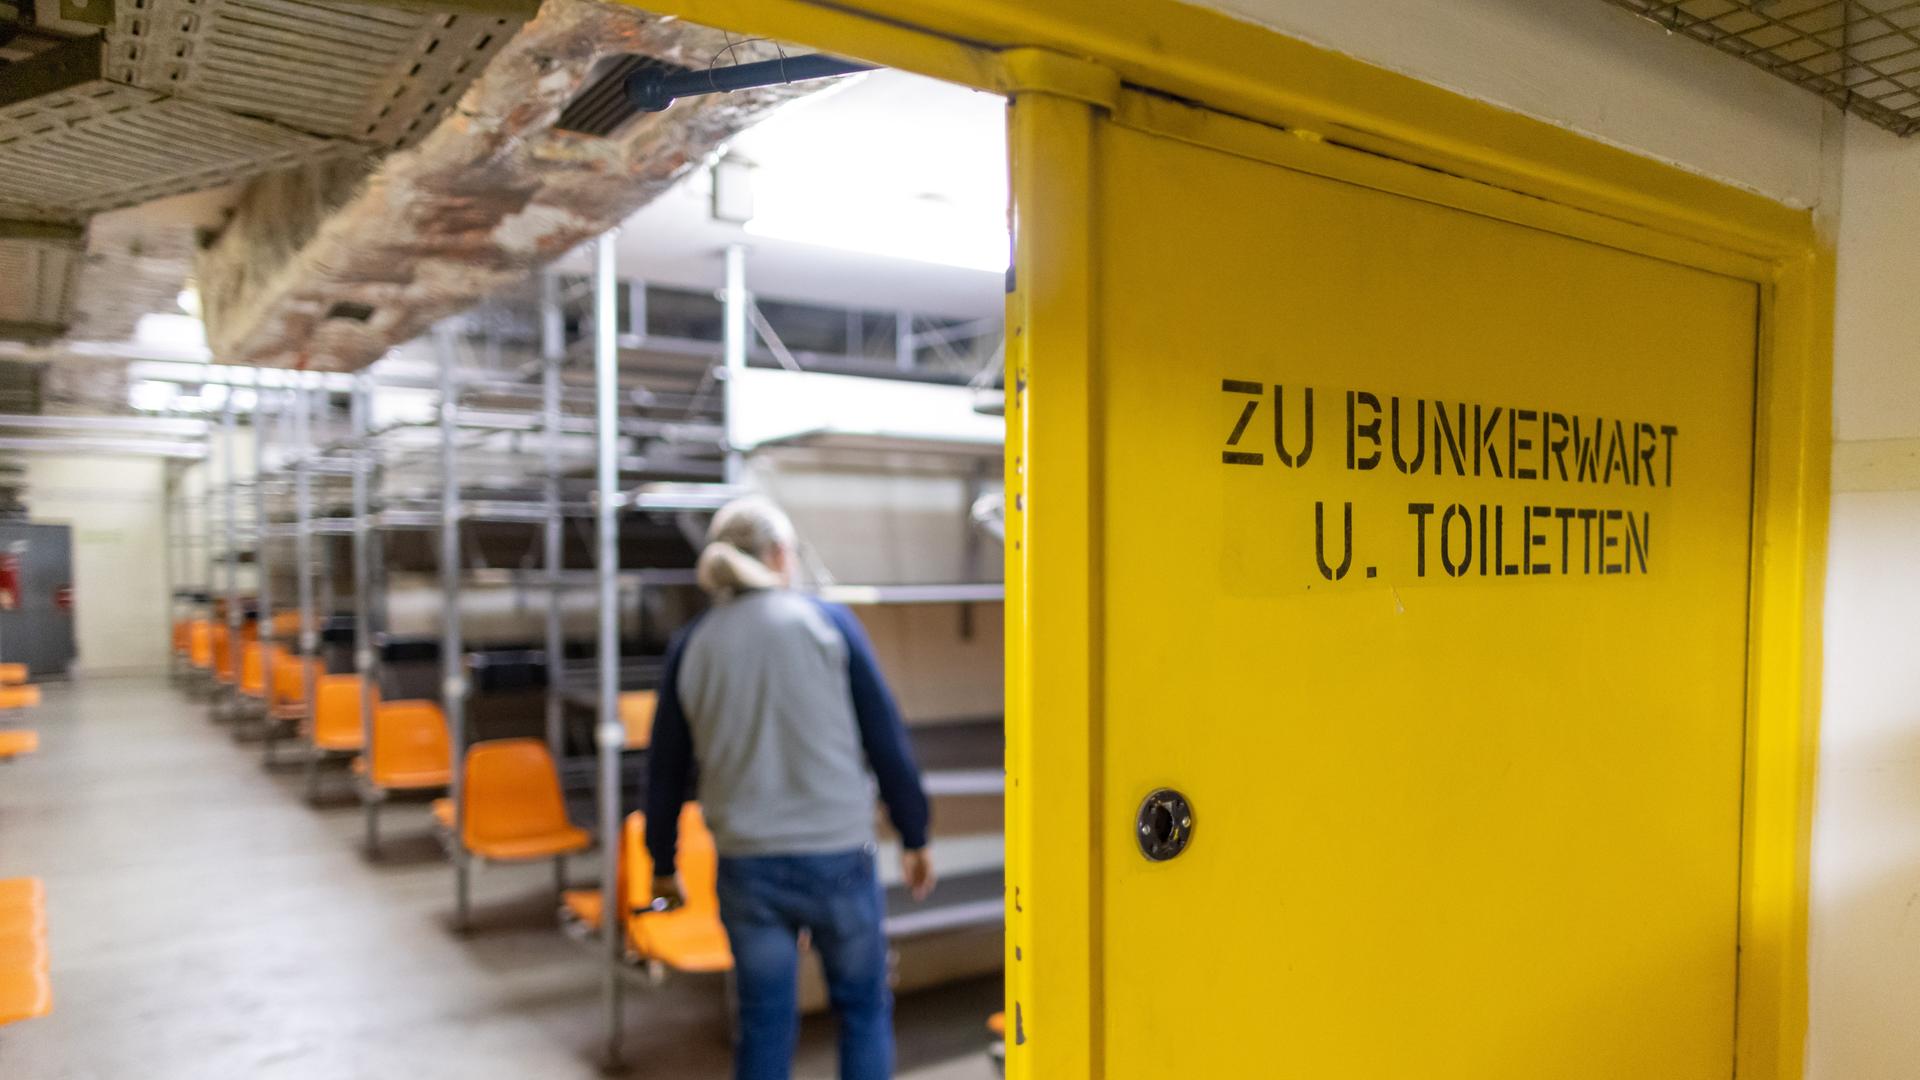 "Zu Bunkerwart und Toiletten" steht auf einer Tür am Aufenthalts- und Schlafraum eines ABC-Bunkers in Nürnberg. Der Atomschutzbunker wurde in den 70er-Jahren während des Kalten Krieges gebaut und sollte den Bürgern Schutz vor Atomwaffen oder auch chemischen und biologischen Massenvernichtungswaffen bieten.